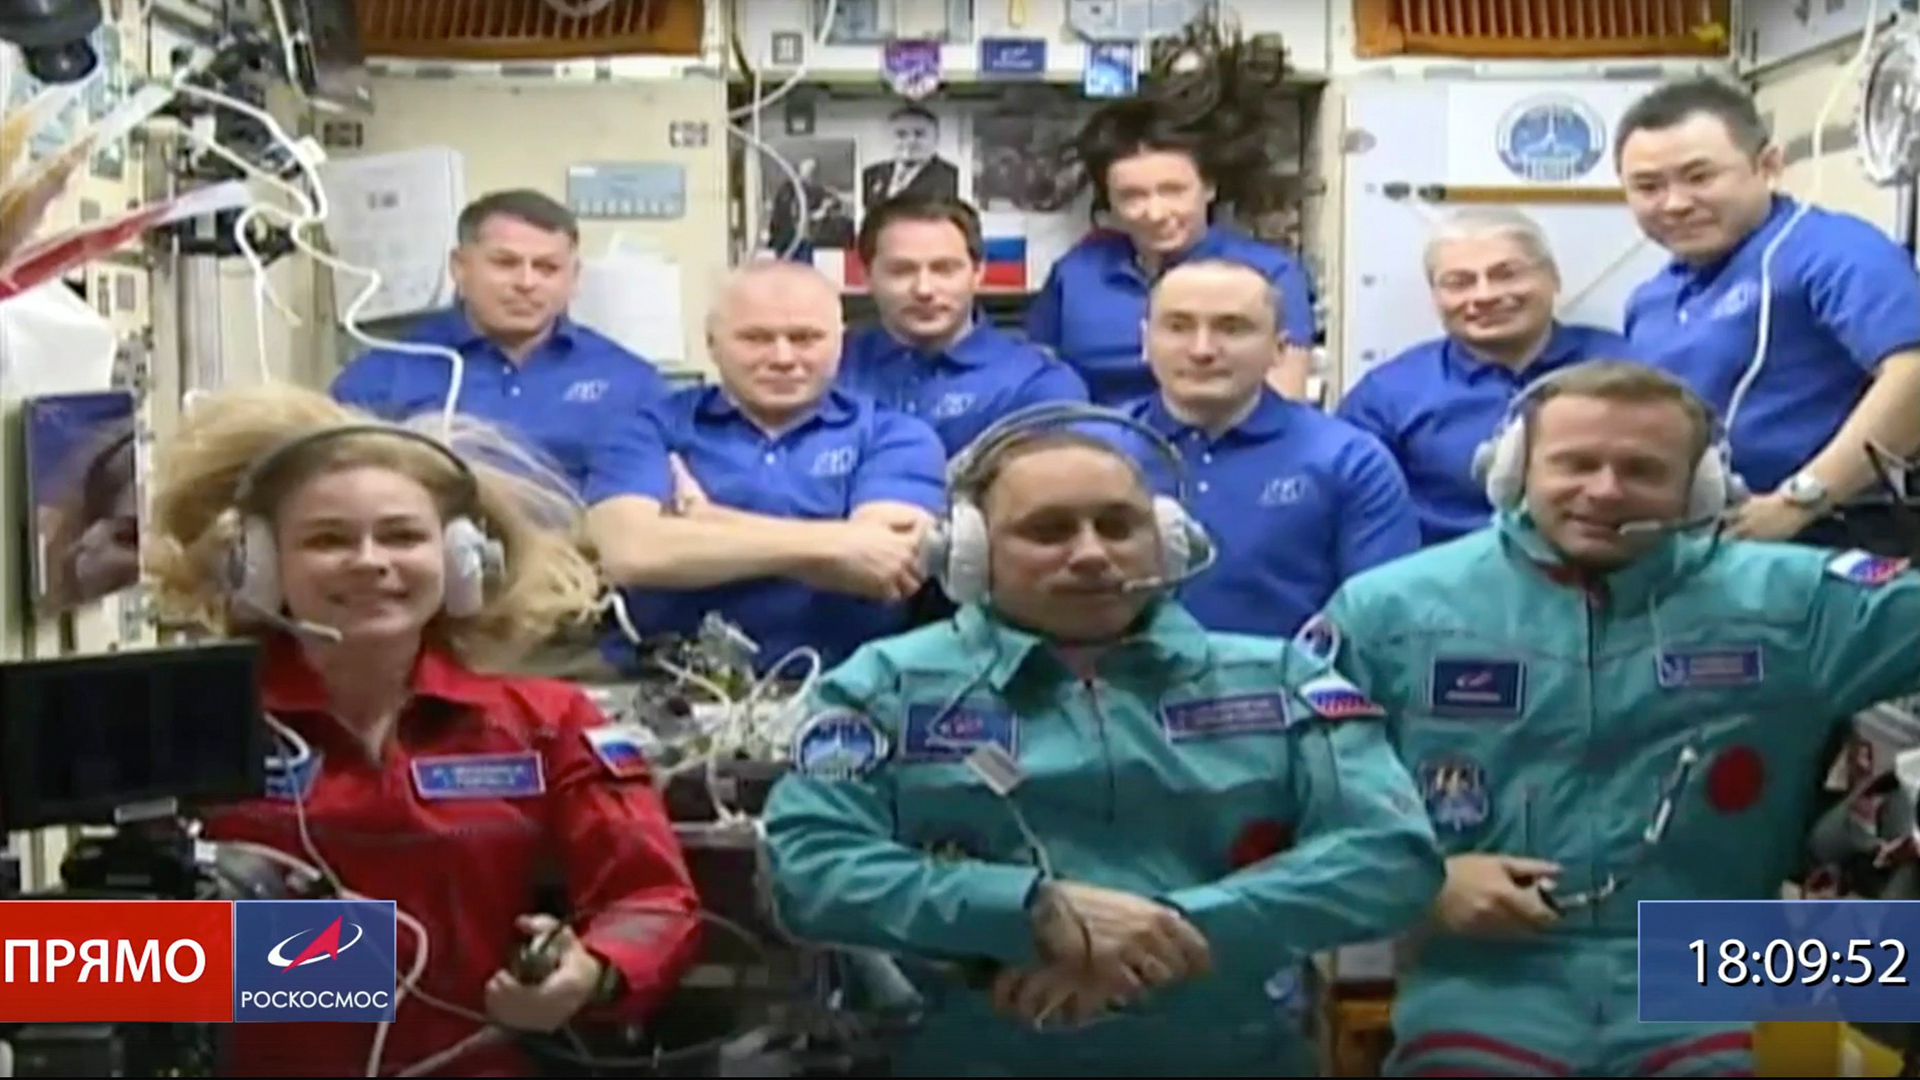 Schauspielerin Yulia Peresild (links), der Filmregisseur Klim Shipenko (rechts) und der Kosmonaut Anton Shkaplerov in der ersten Reihe mit anderen Teilnehmern der Mission in der Internationalen Raumstation ISS | AP